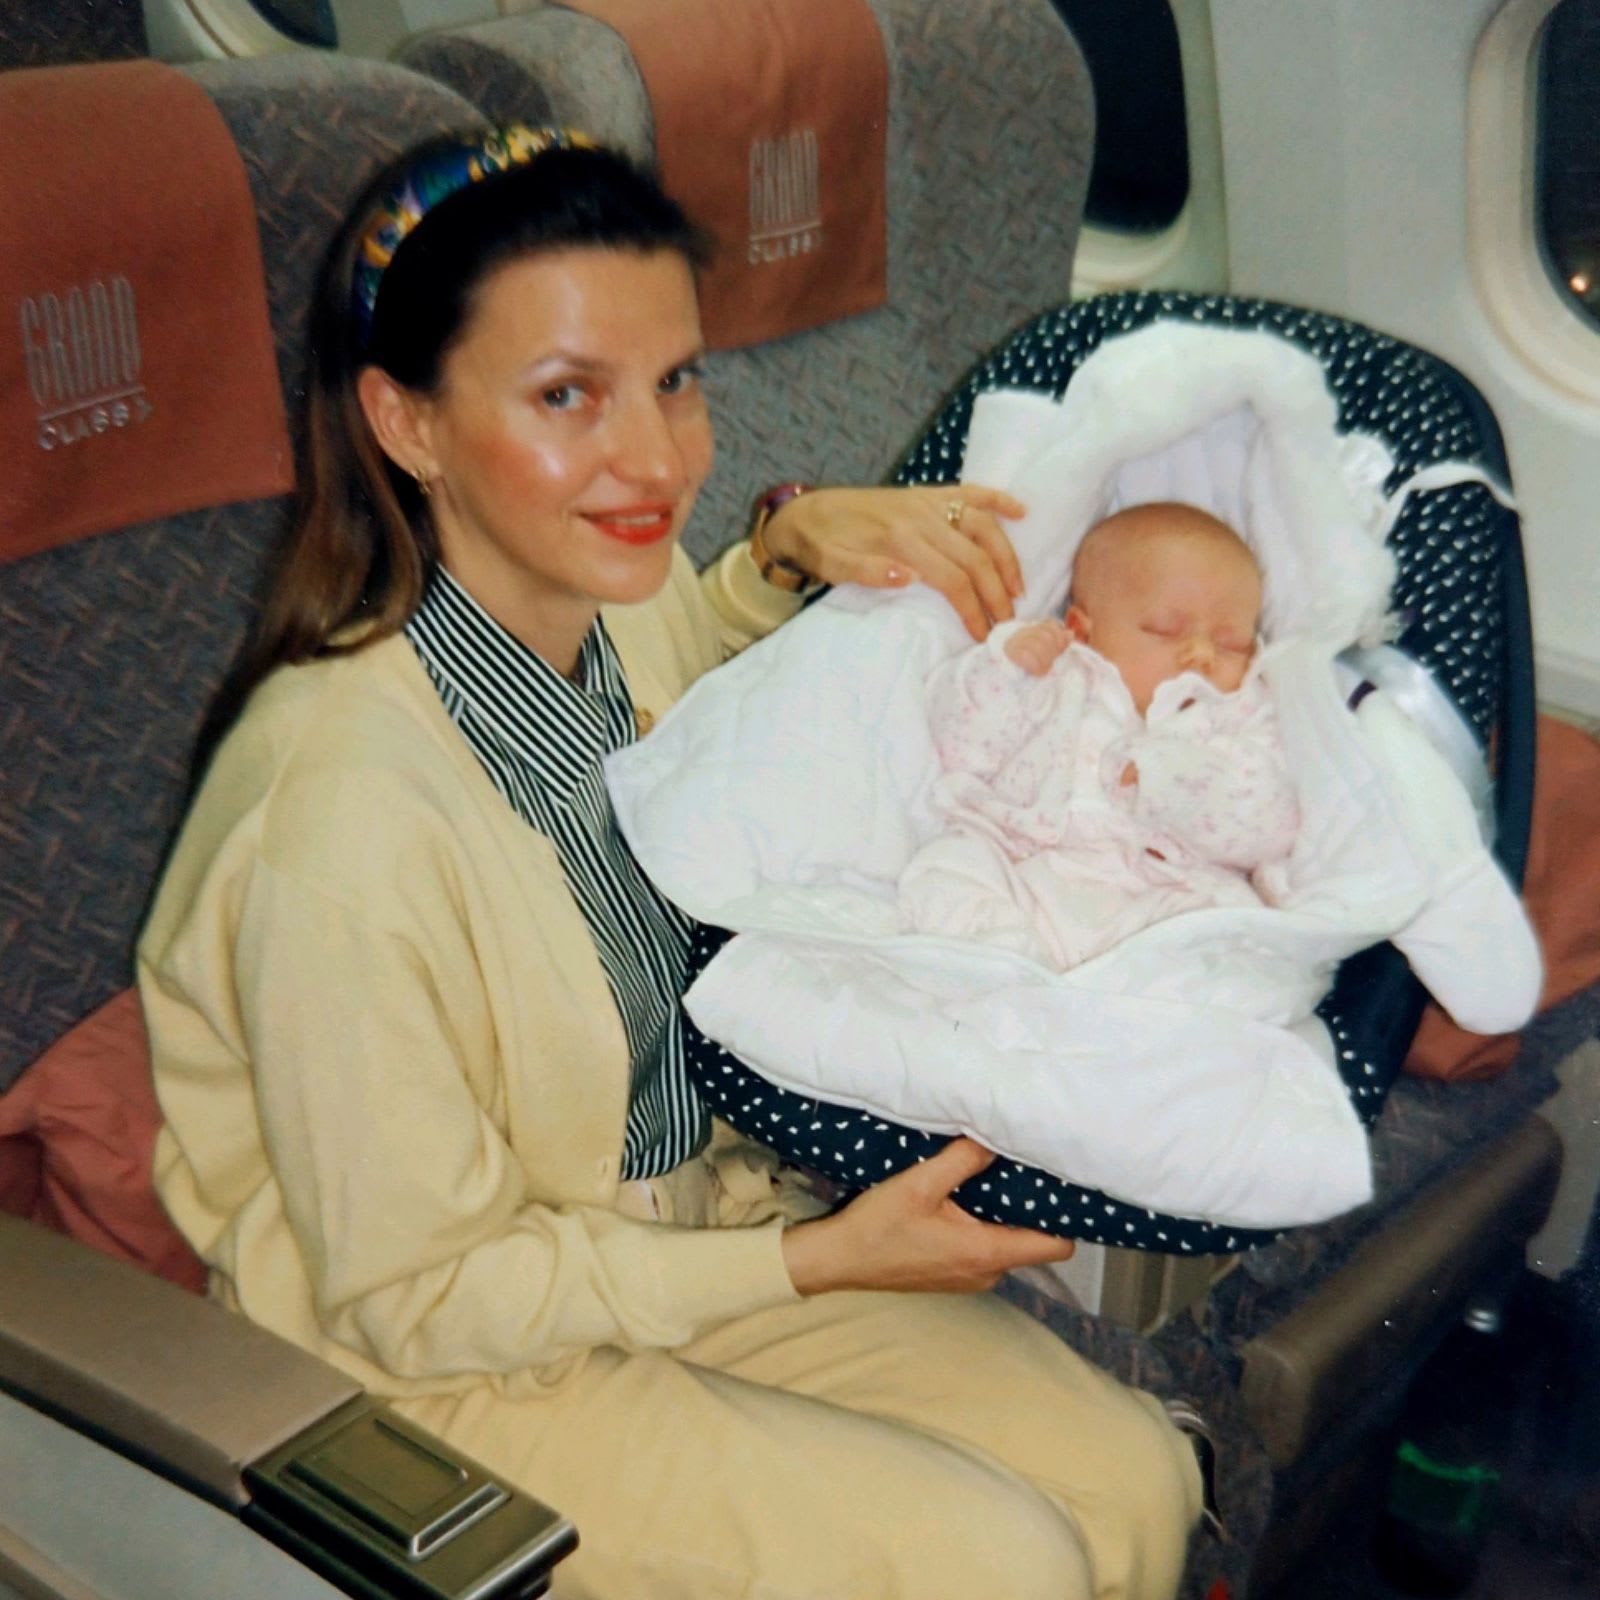 بعد أكثر من 20 عامًا..مضيفة عاشقة للطيران تعيد إنشاء صورة من طفولتها أمام طائرة